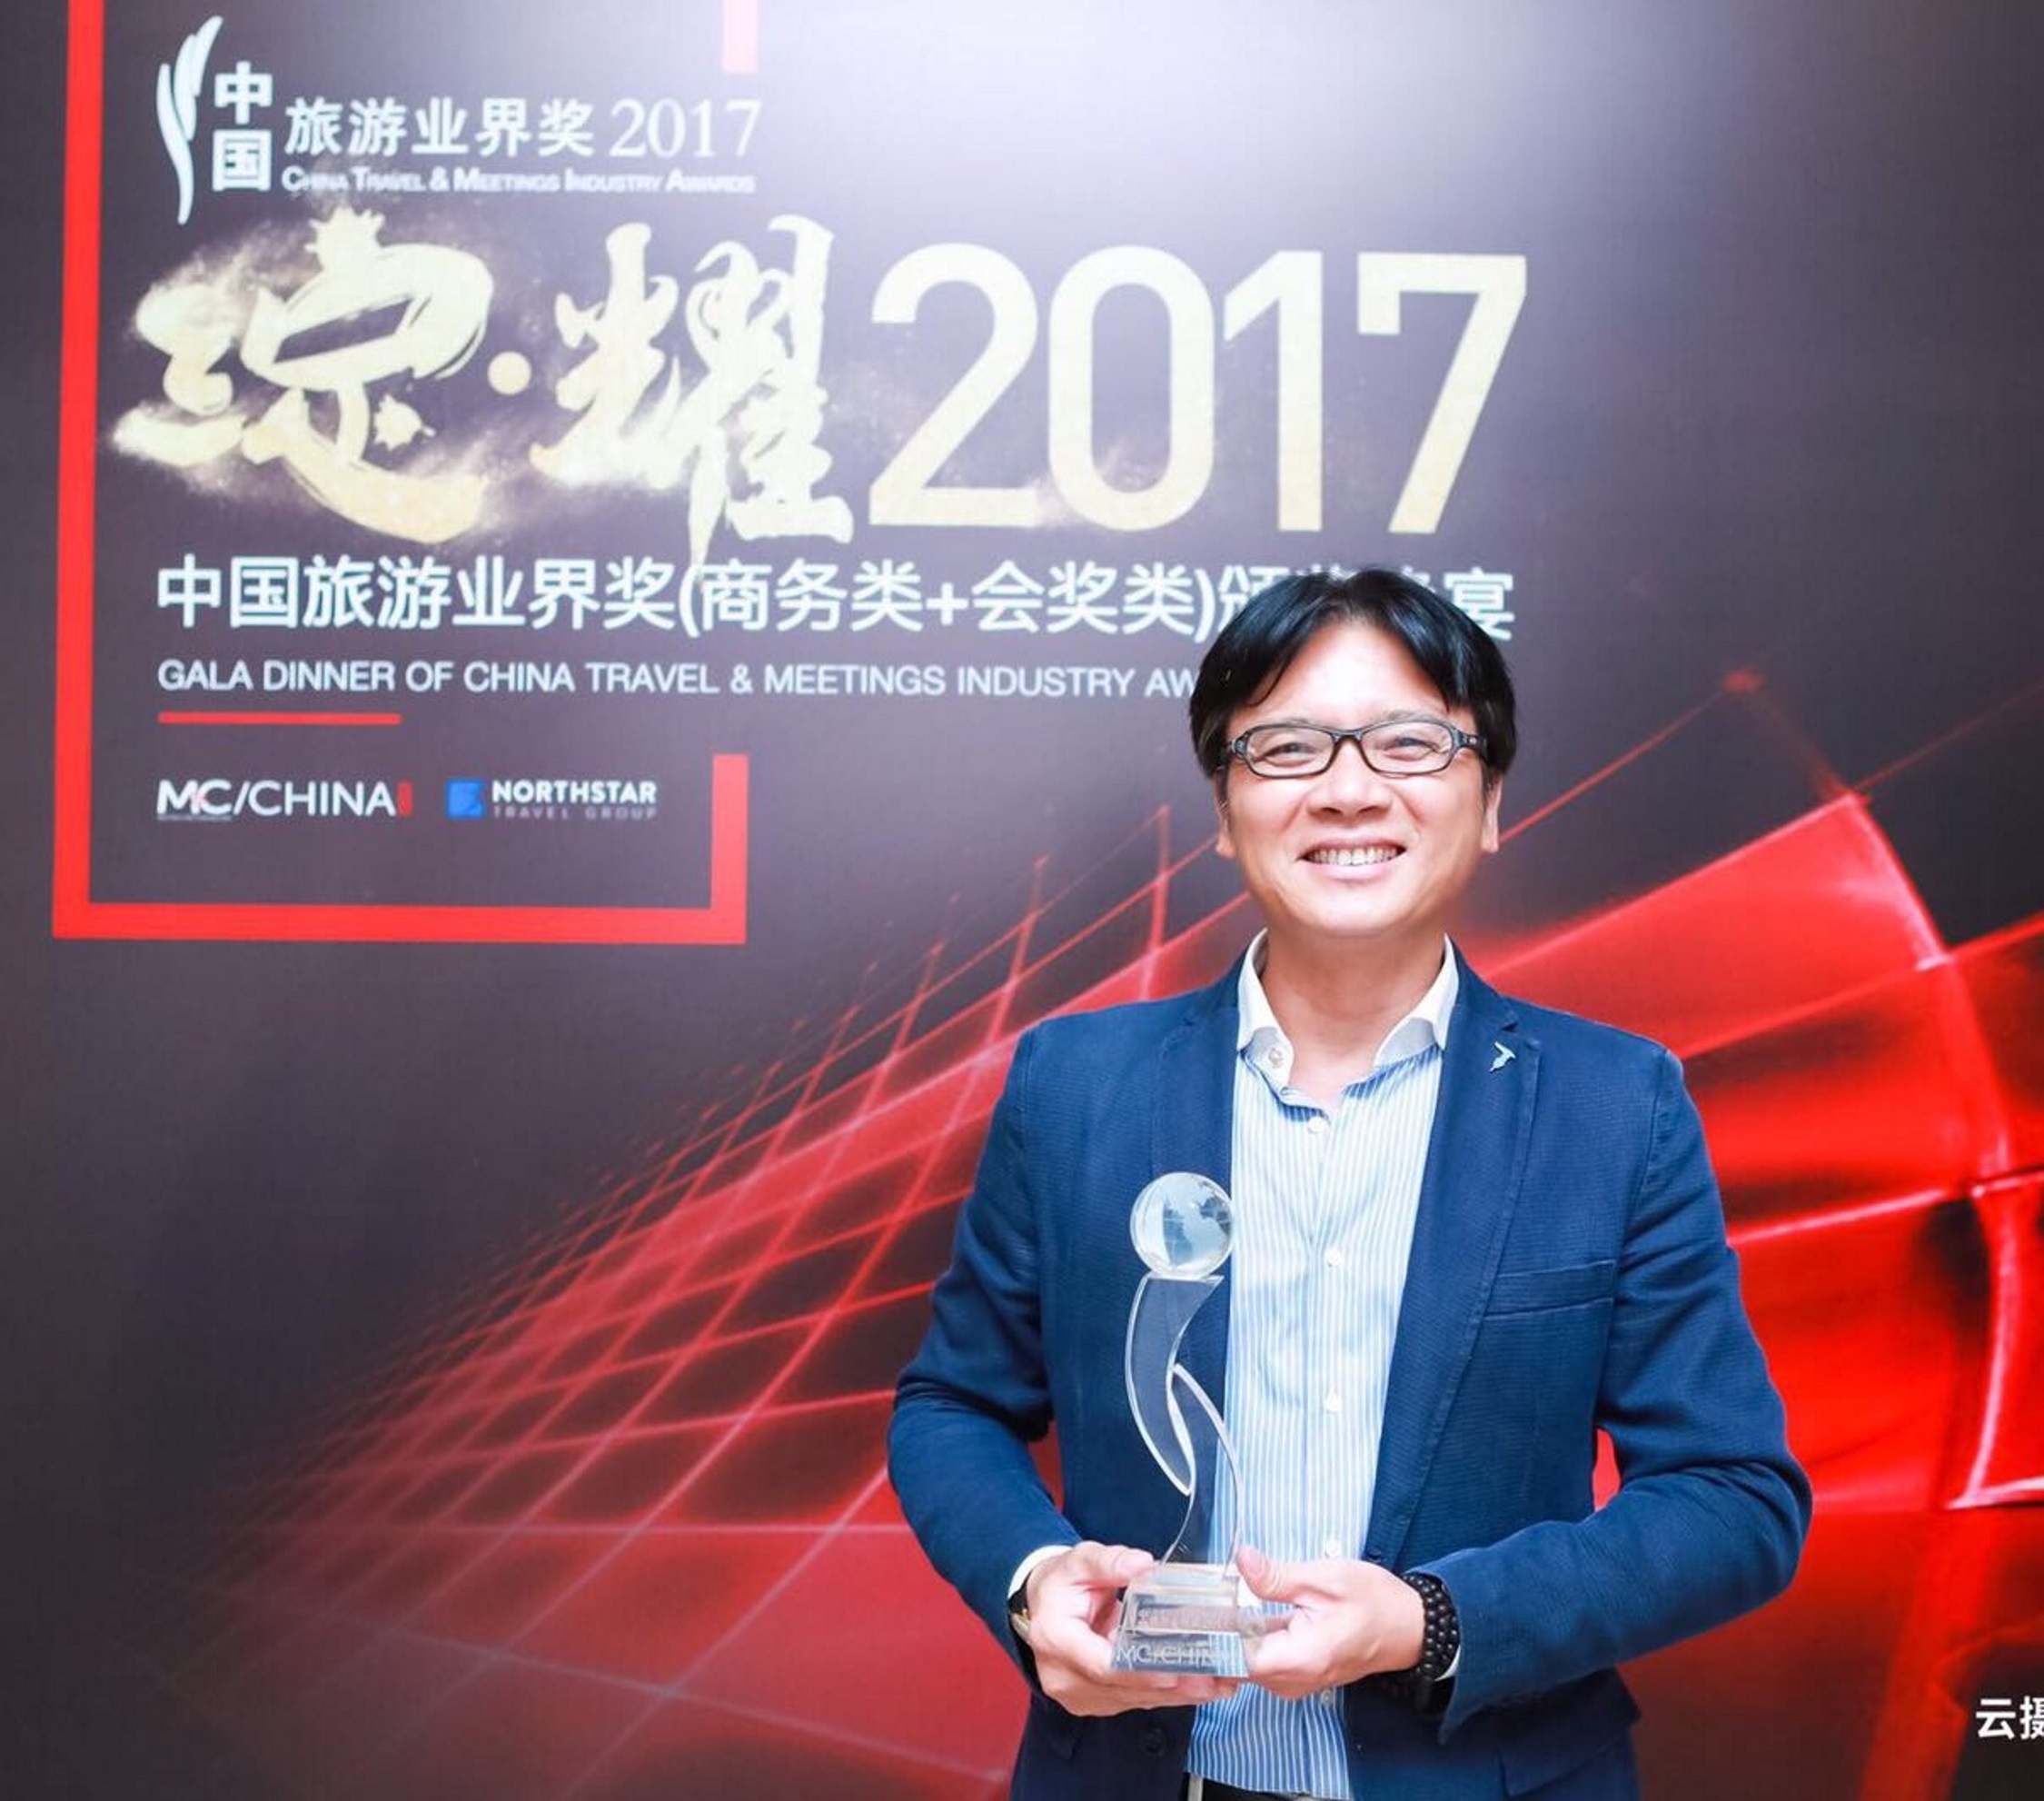 Monaco récompensé en Chine pour son tourisme d’affaires